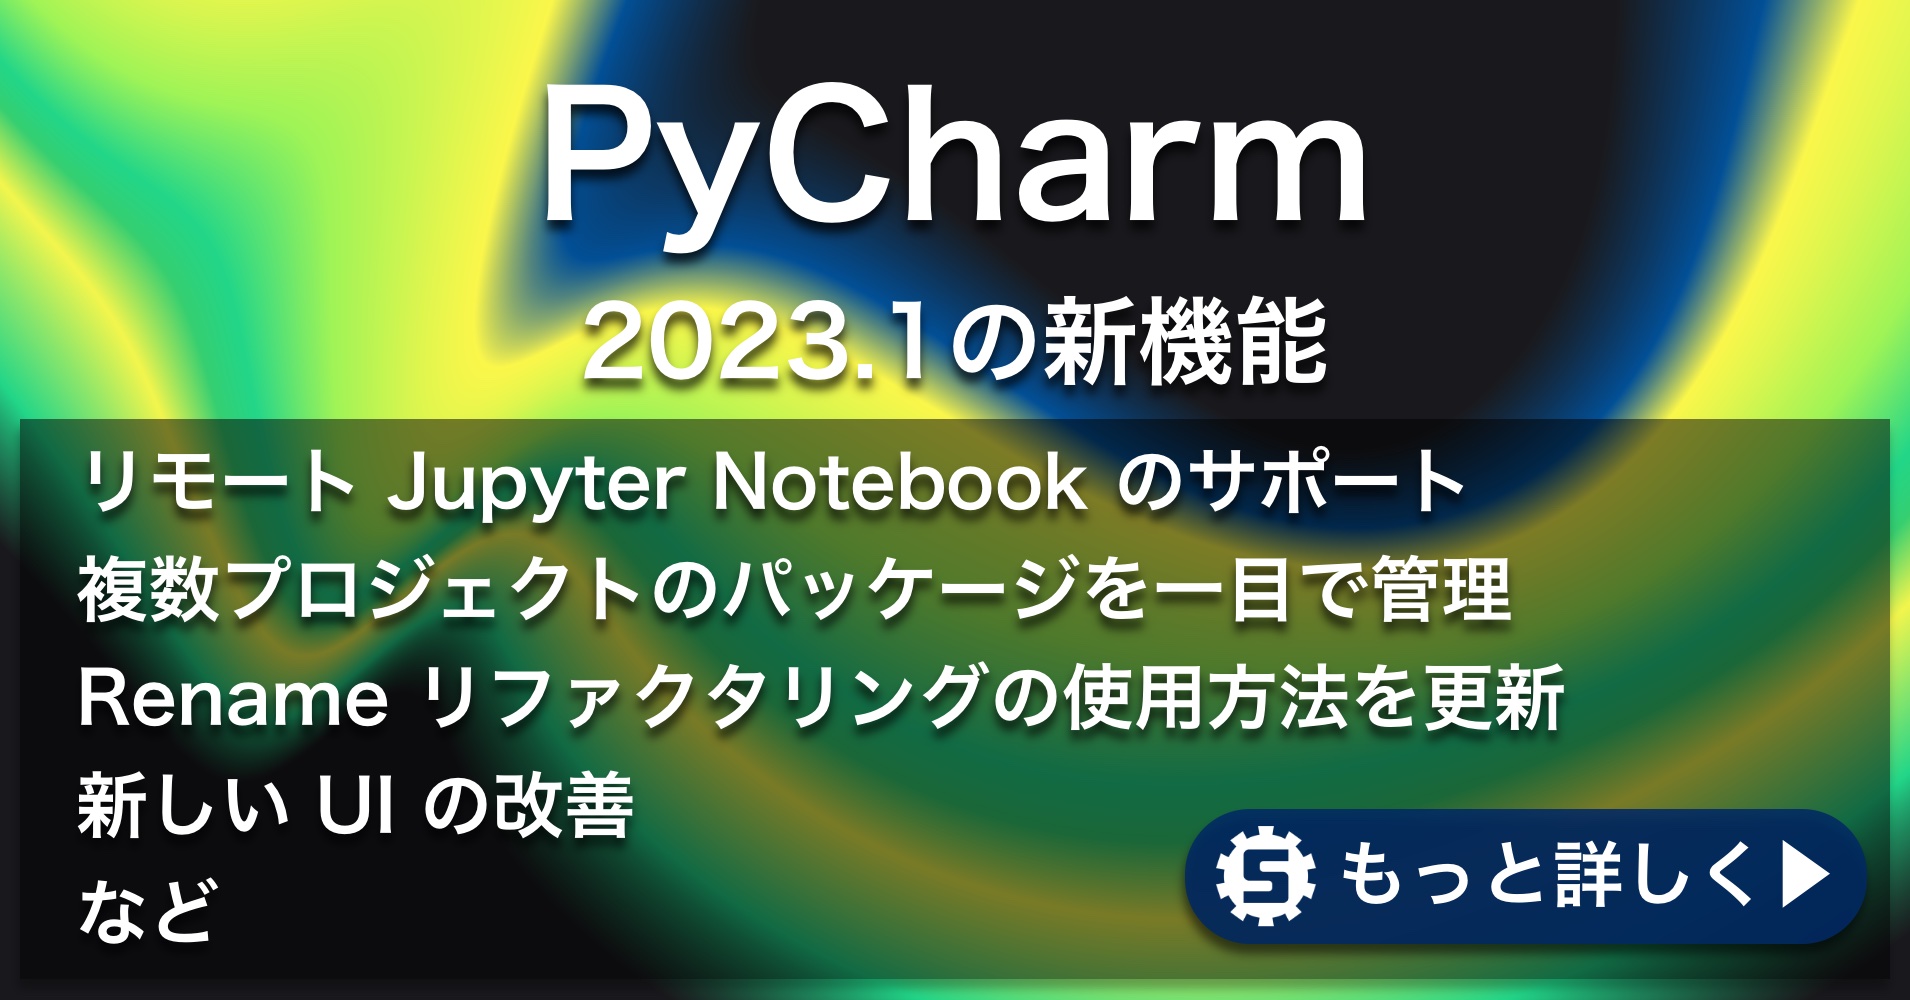 PyCharm 2023.1の新機能